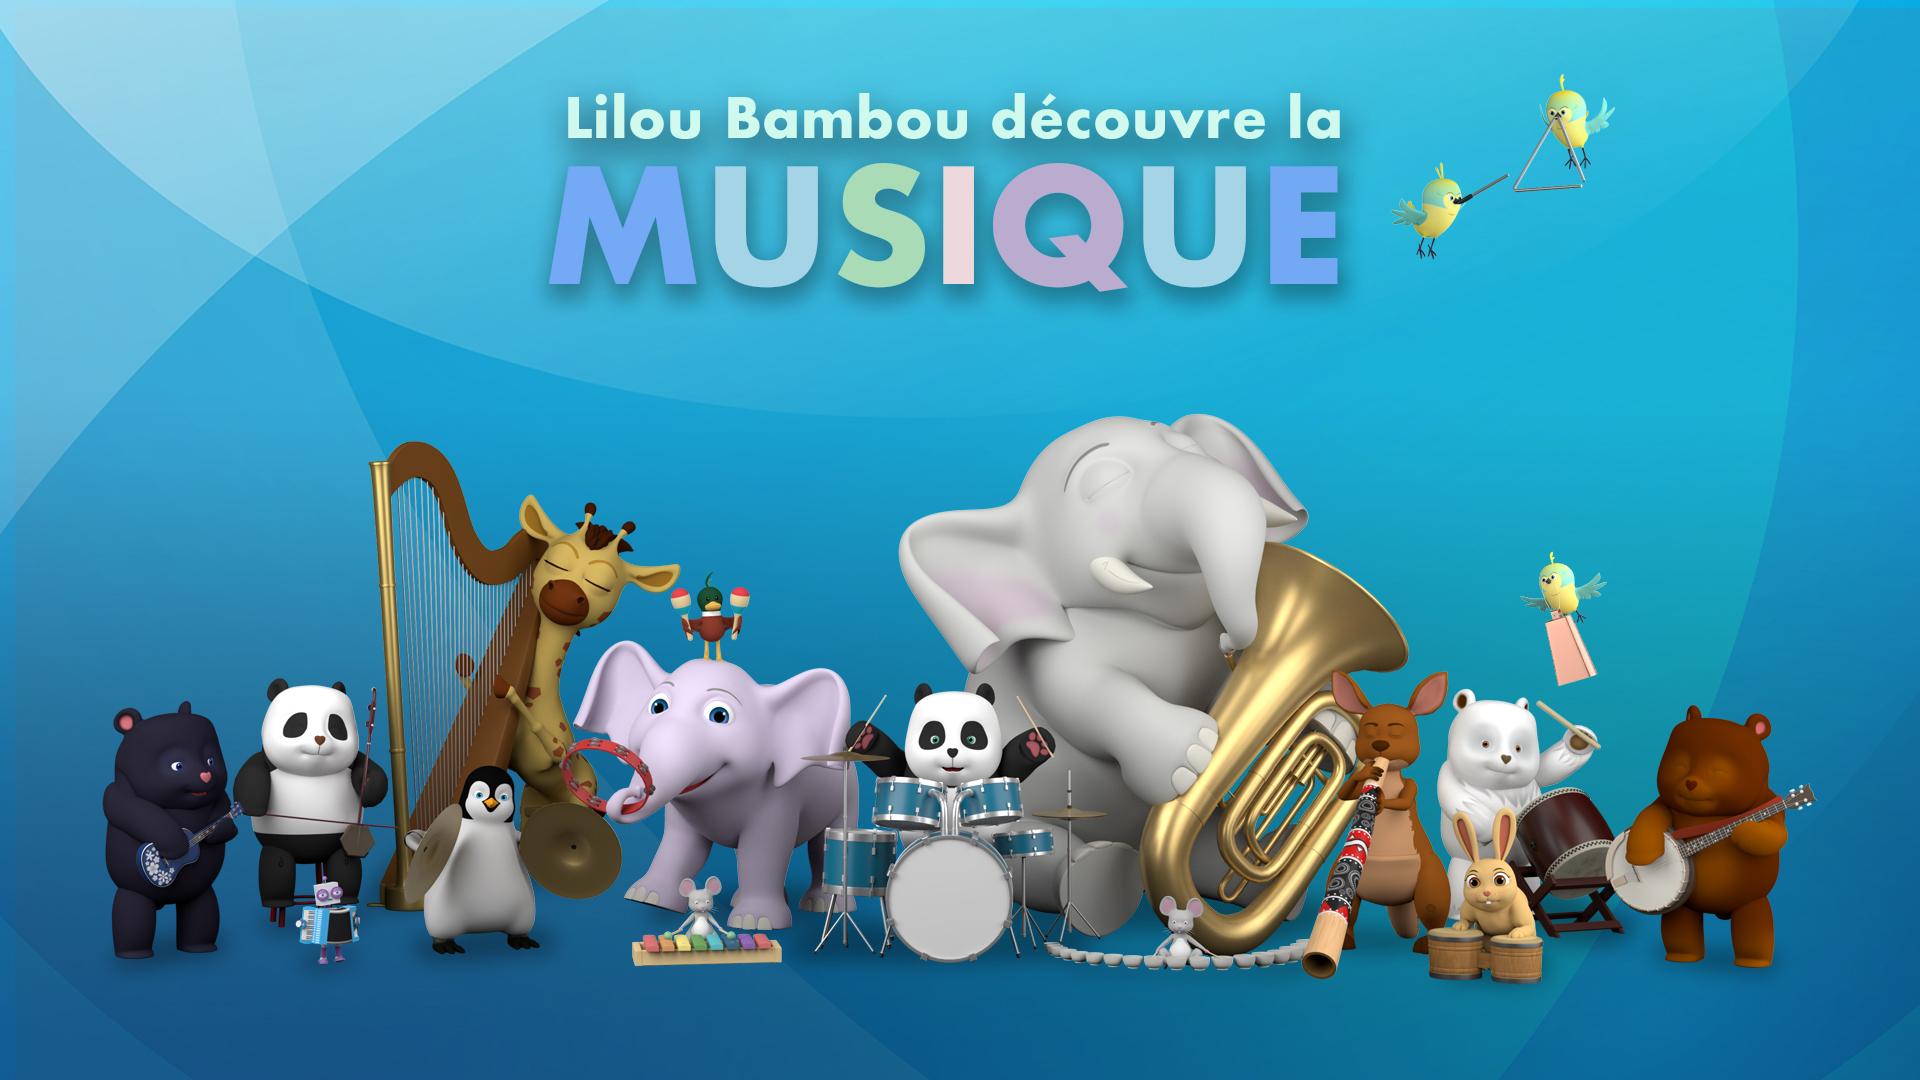 Lilou Bambou découvre la musique